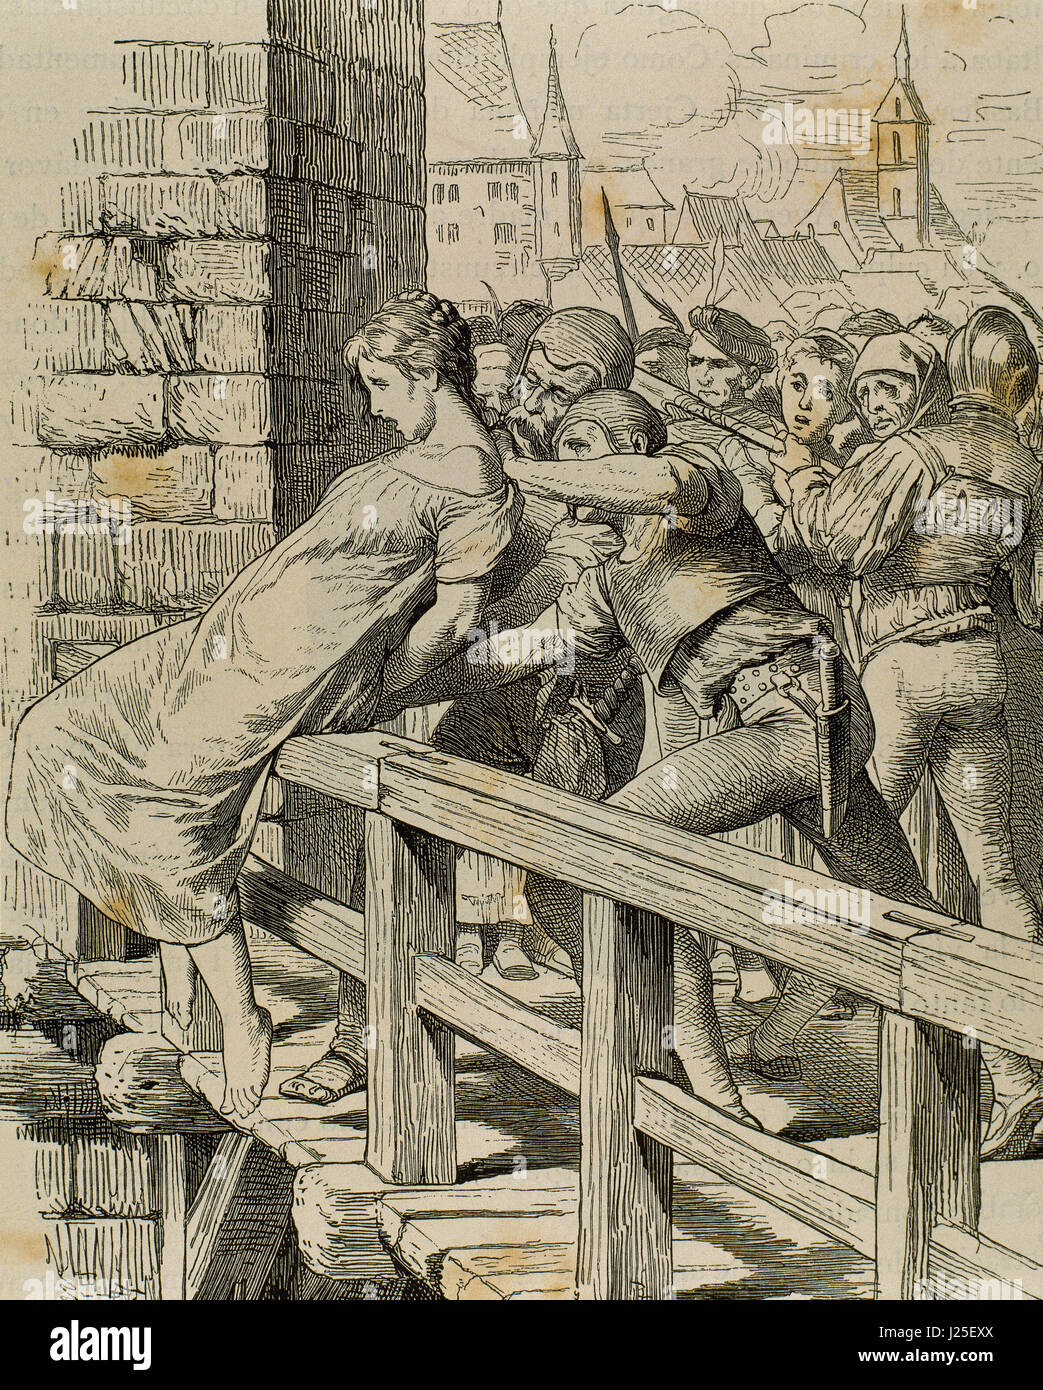 Alemania. Edad media. El castigo a un niño asesino. Grabado. 'Germania', de 1882. Foto de stock